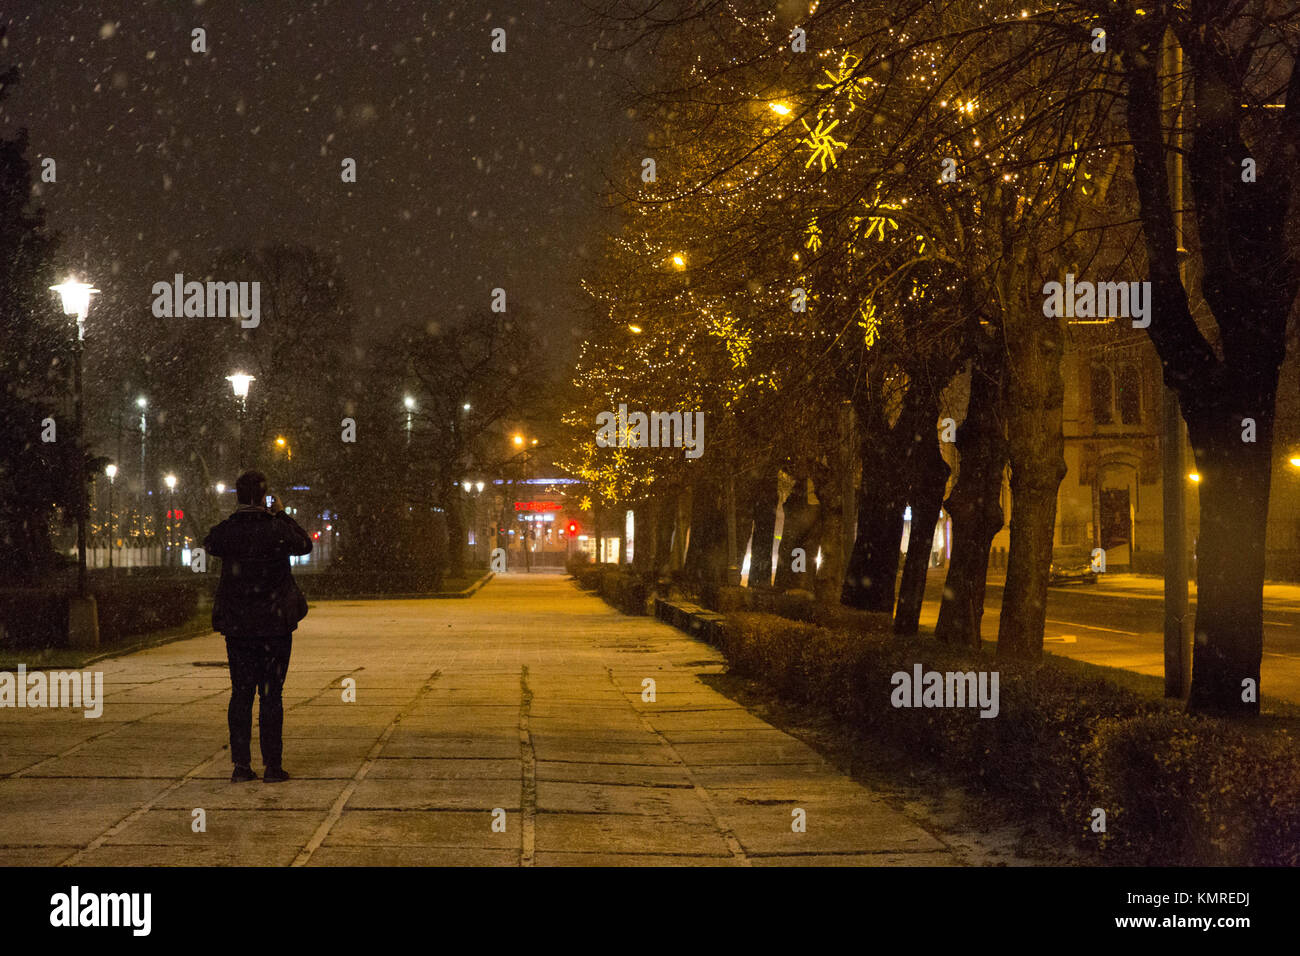 Les chutes de neige à nuit à Riga, Lettonie. Photographies d'une femme de la rue. Banque D'Images